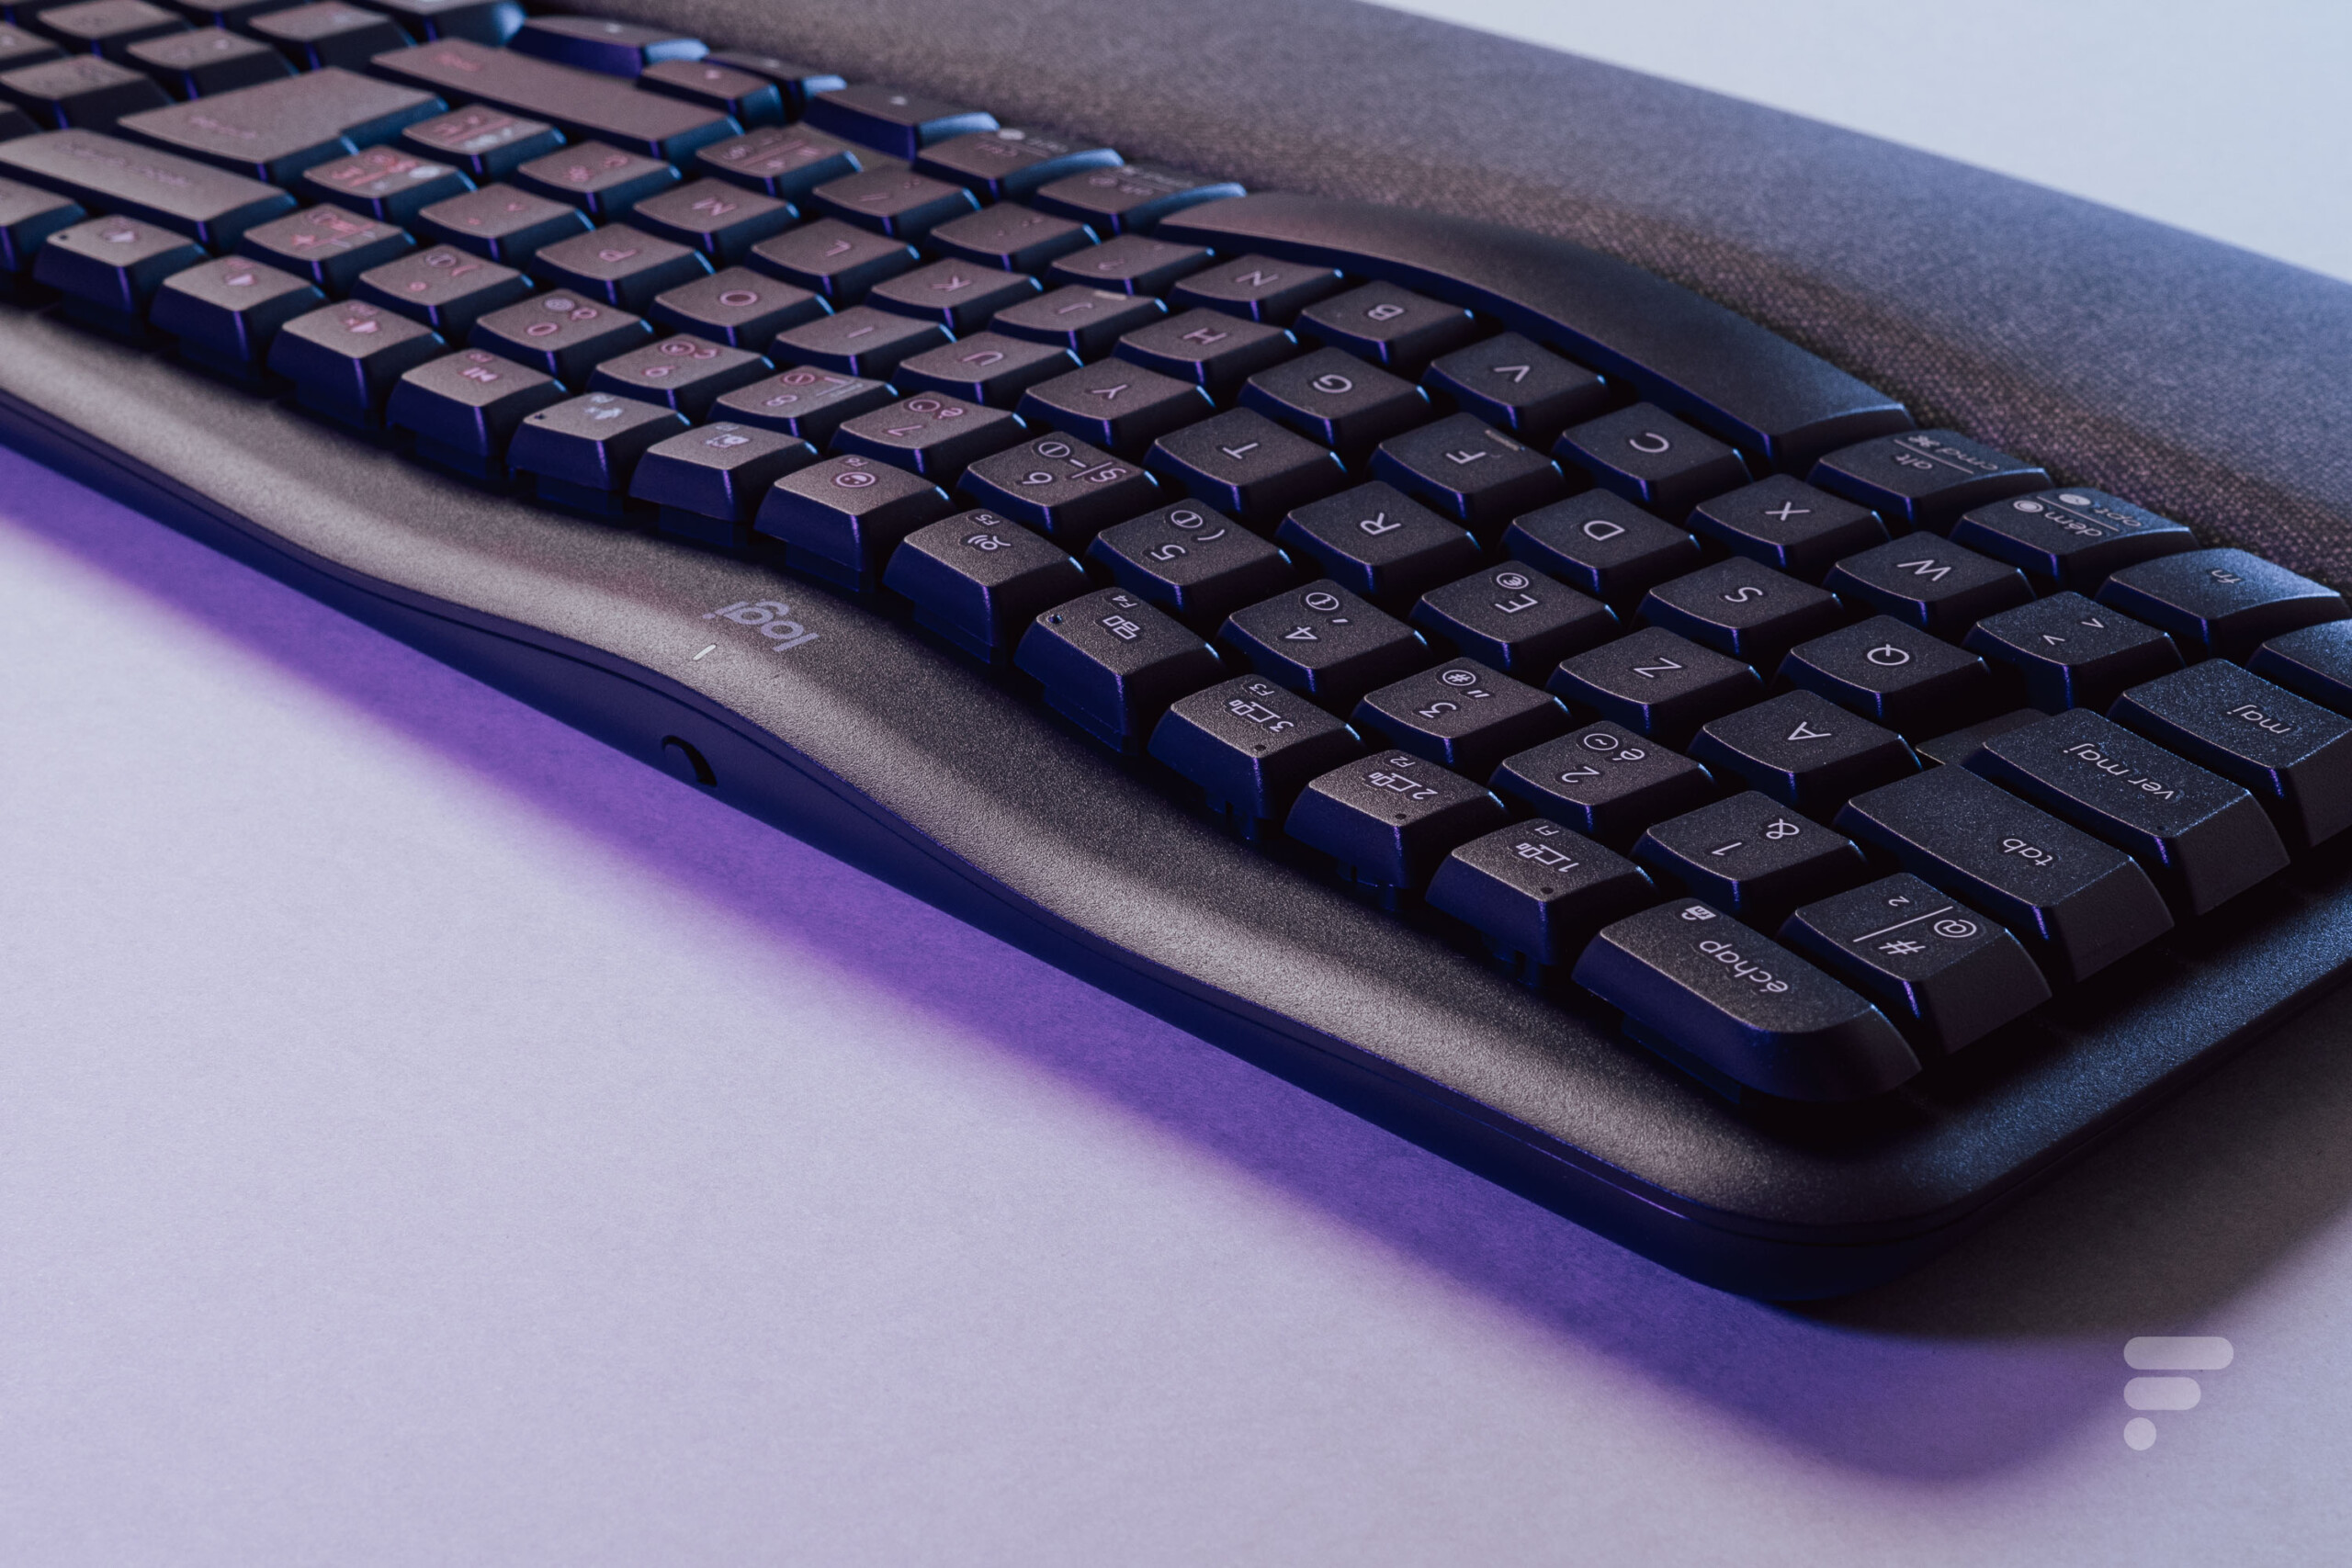 Logitech Wave Keys clavier ergonomique sans fil avec repose